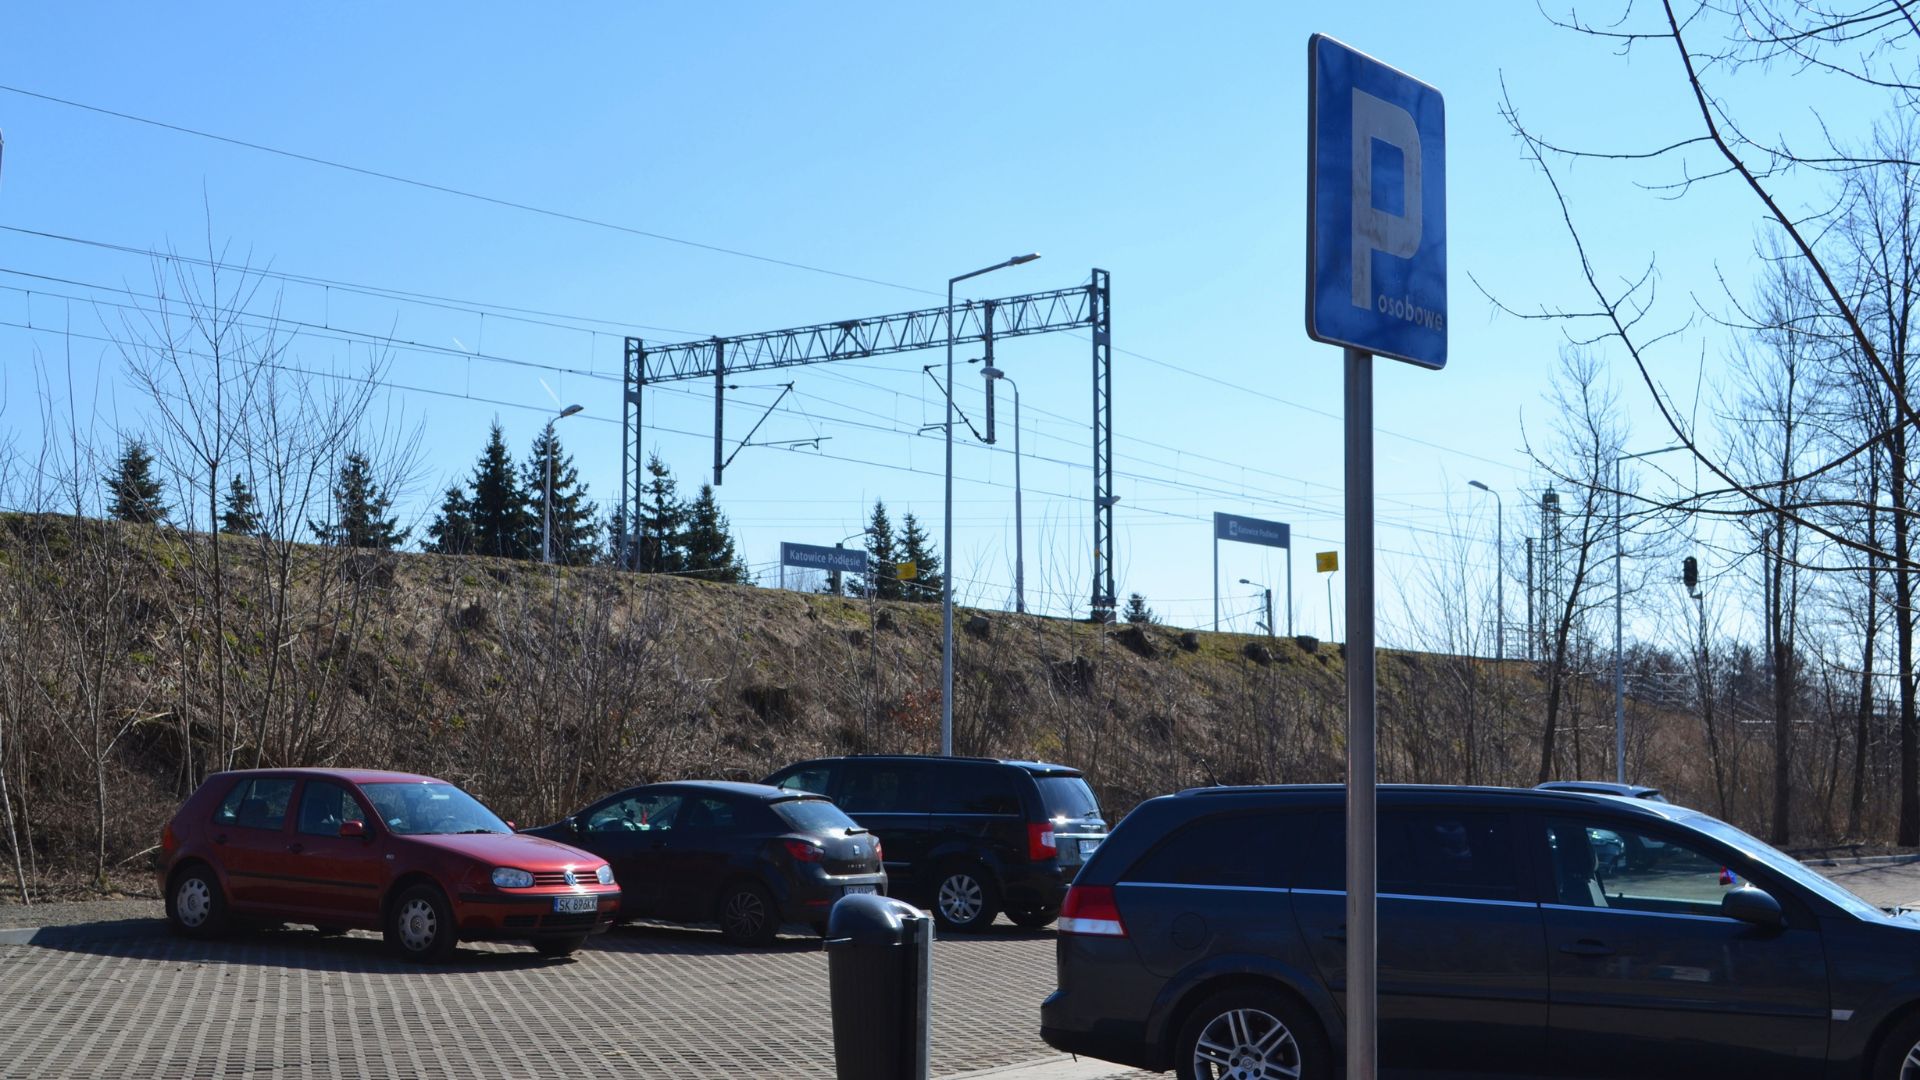 Fot. KAW. Nowy parking na Podlesiu jest darmowy. Można zostawić auto i przesiąść się na pociąg